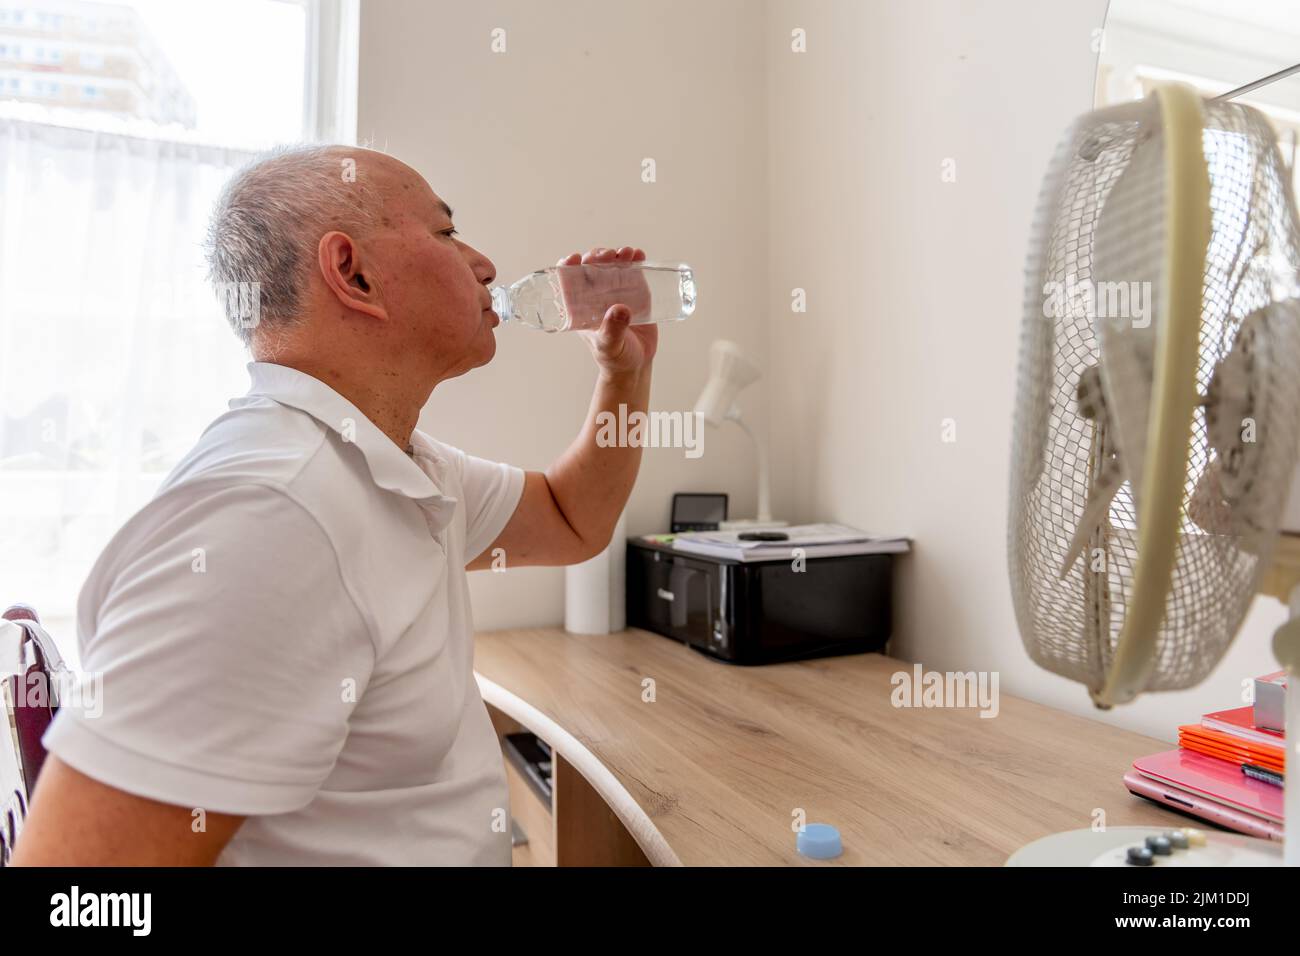 Ein älterer Mann zu Hause, der an einem rekordverdächtigen heißen Sommertag neben einem elektrischen Ventilator Wasser trinkt und versucht, Dehydrierung und Hitzschlag zu vermeiden. Stockfoto